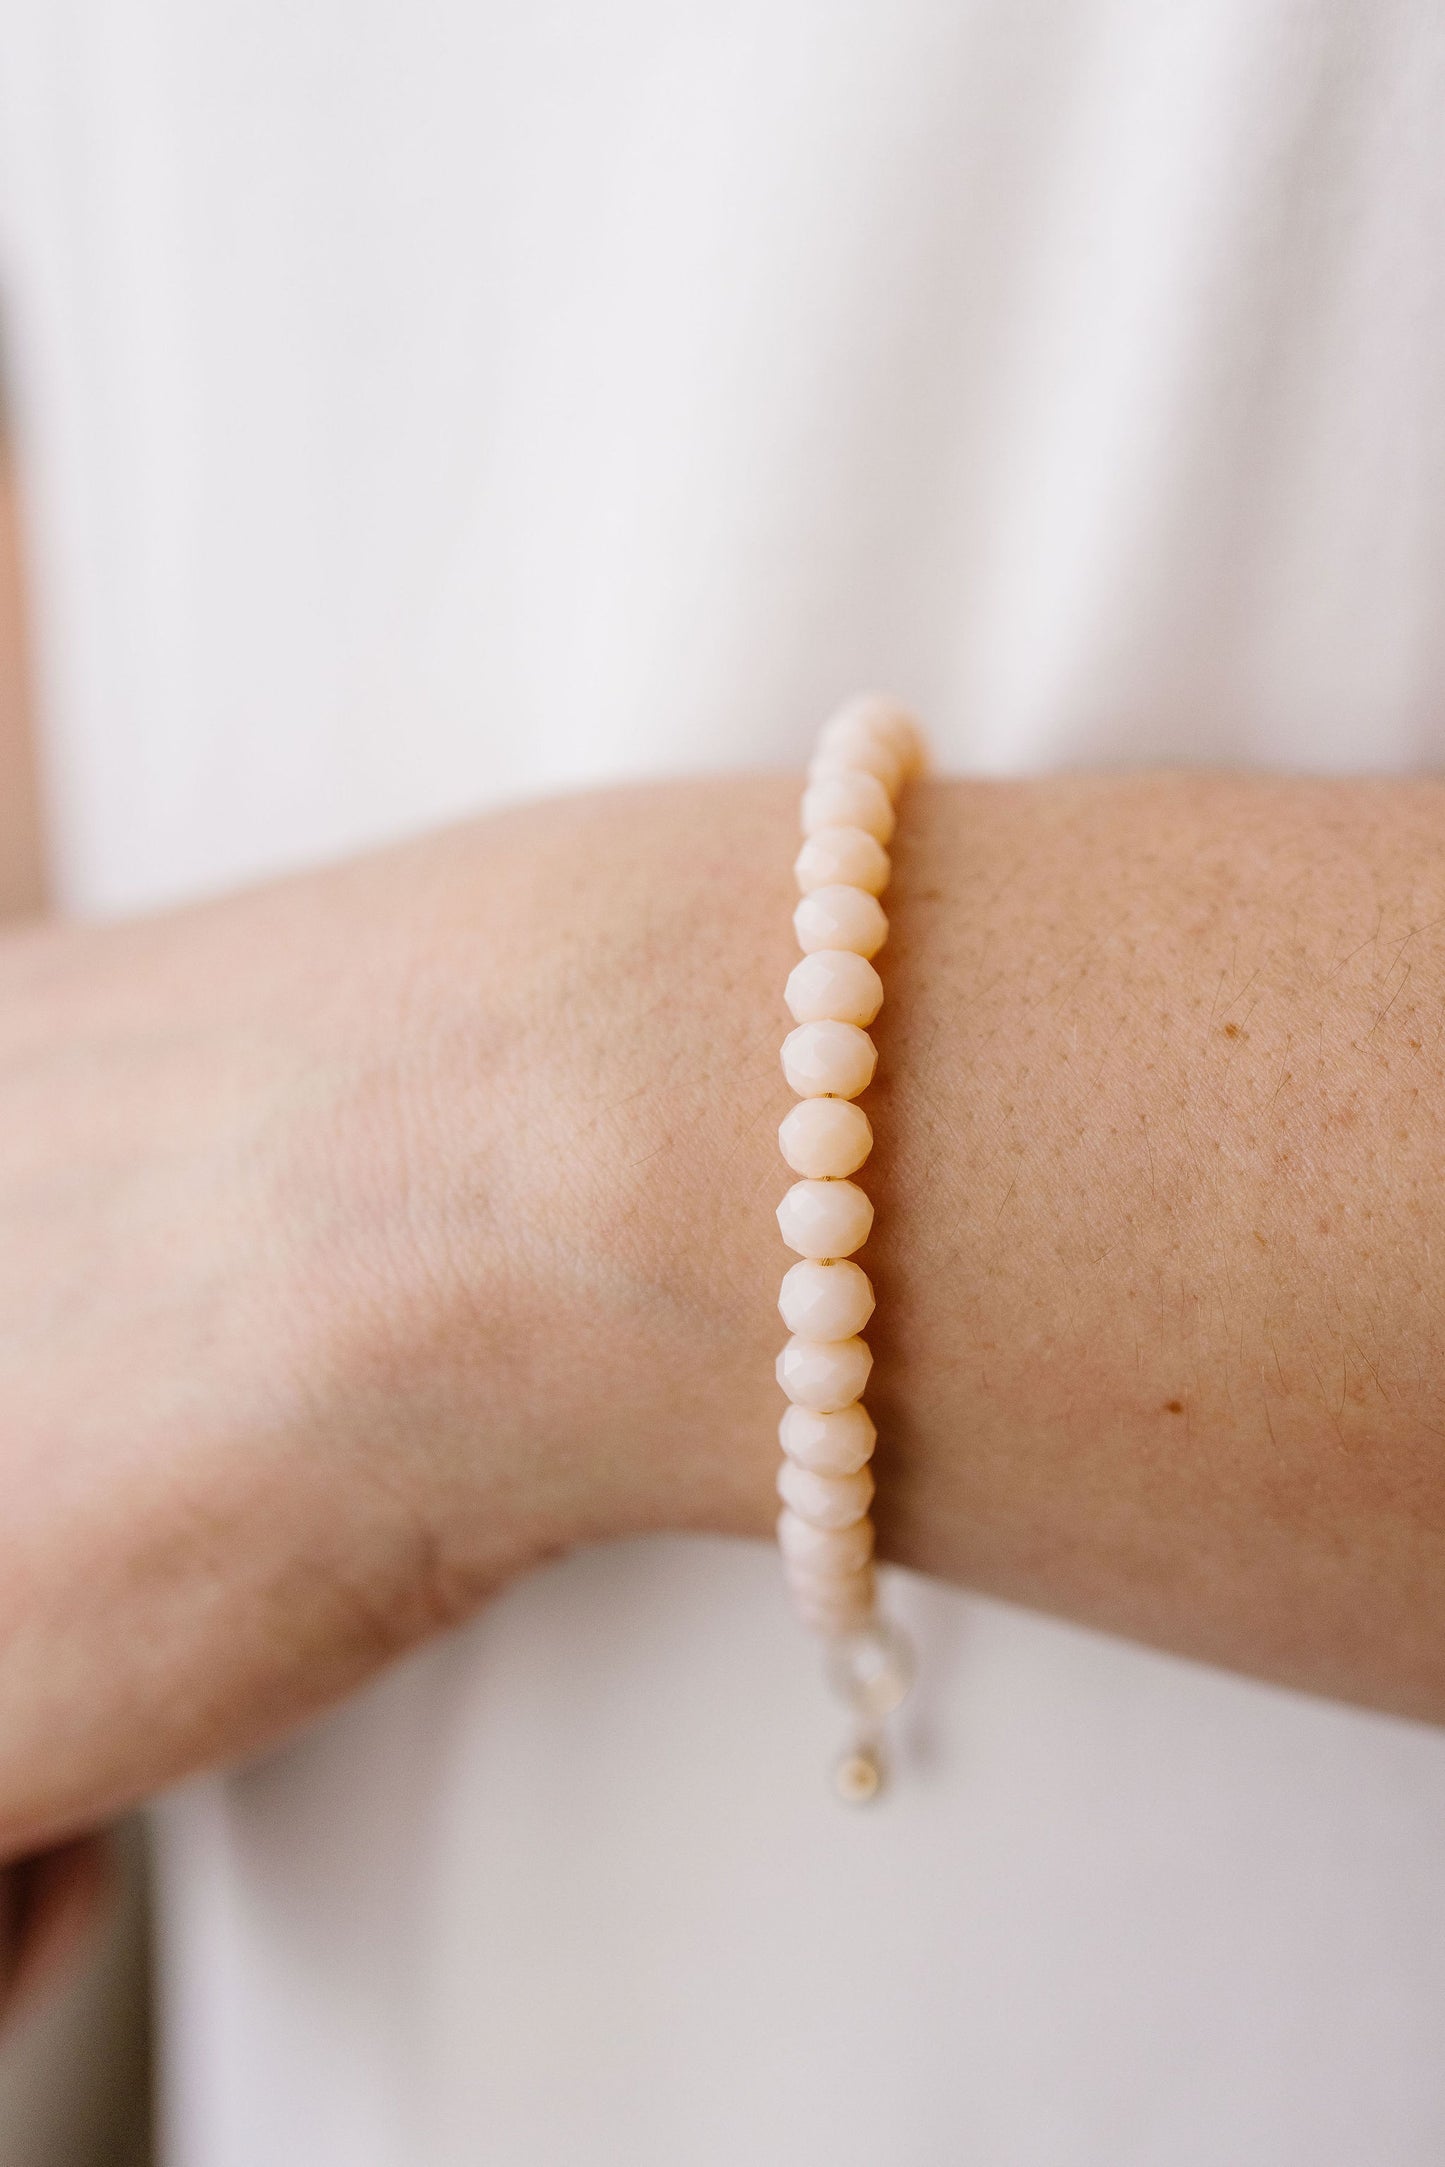 Seashell Adult Bracelet (6MM beads)